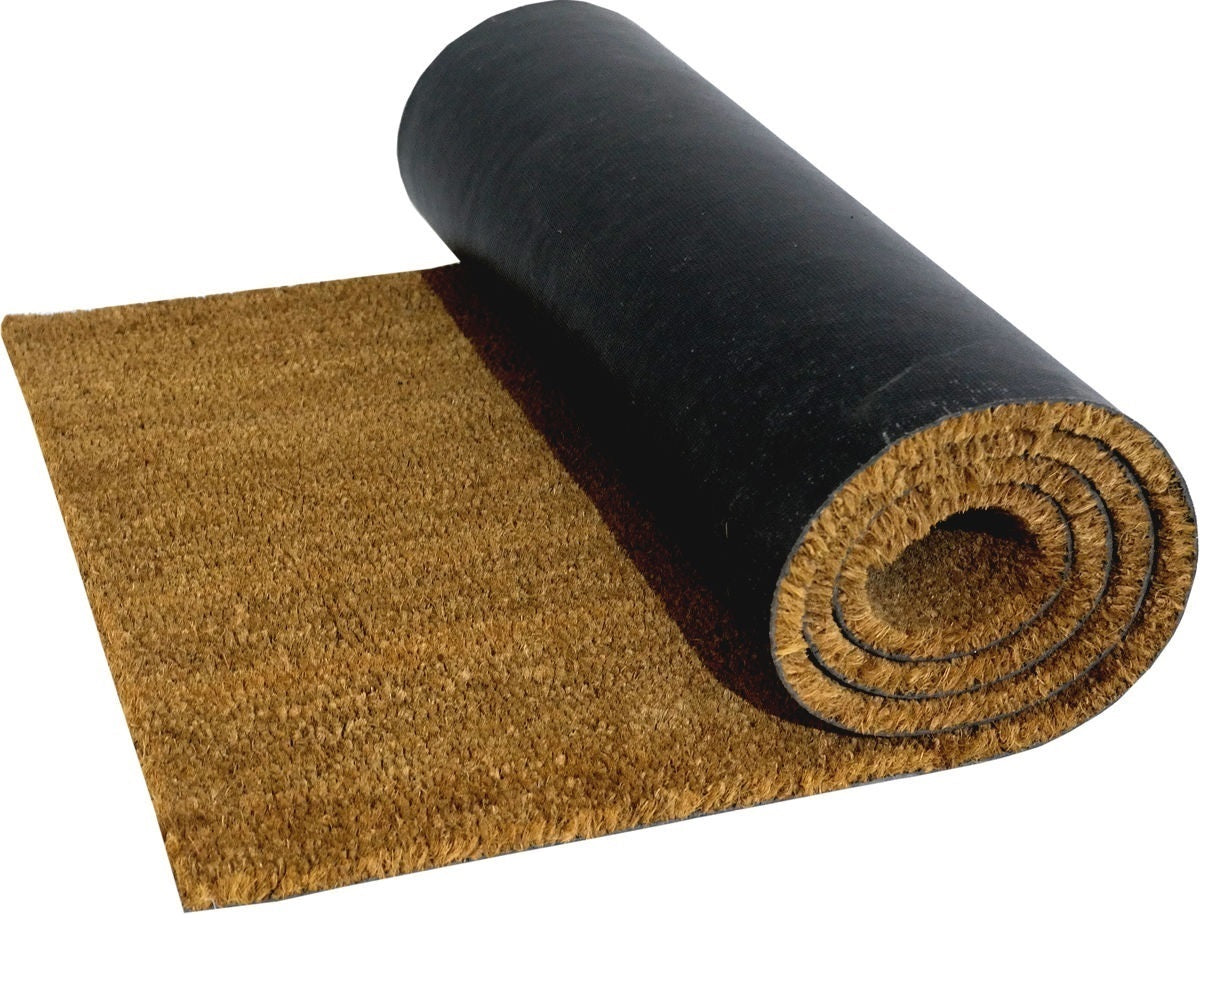 Natural Coir Entrance Matting – Online at Carpet Underlay Shop